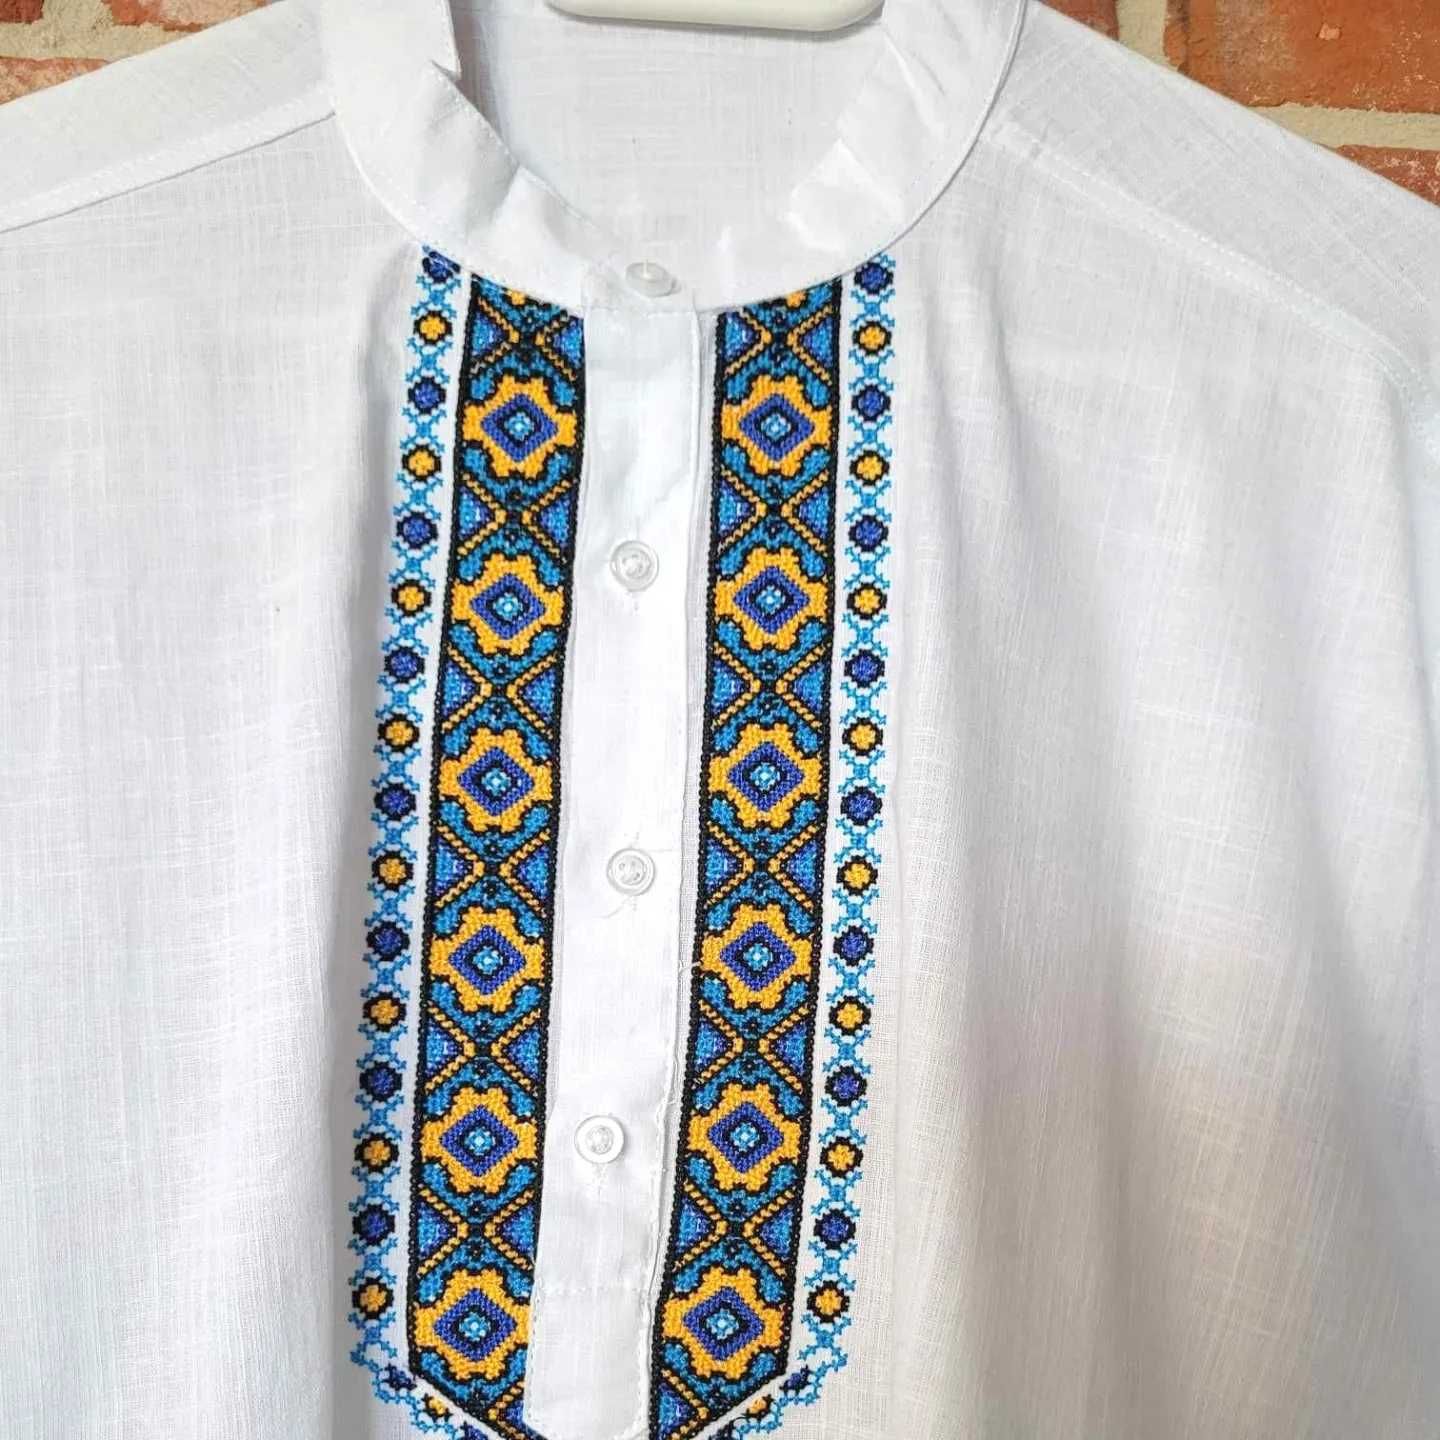 Koszula haftowana męska lniana biała wyszywana